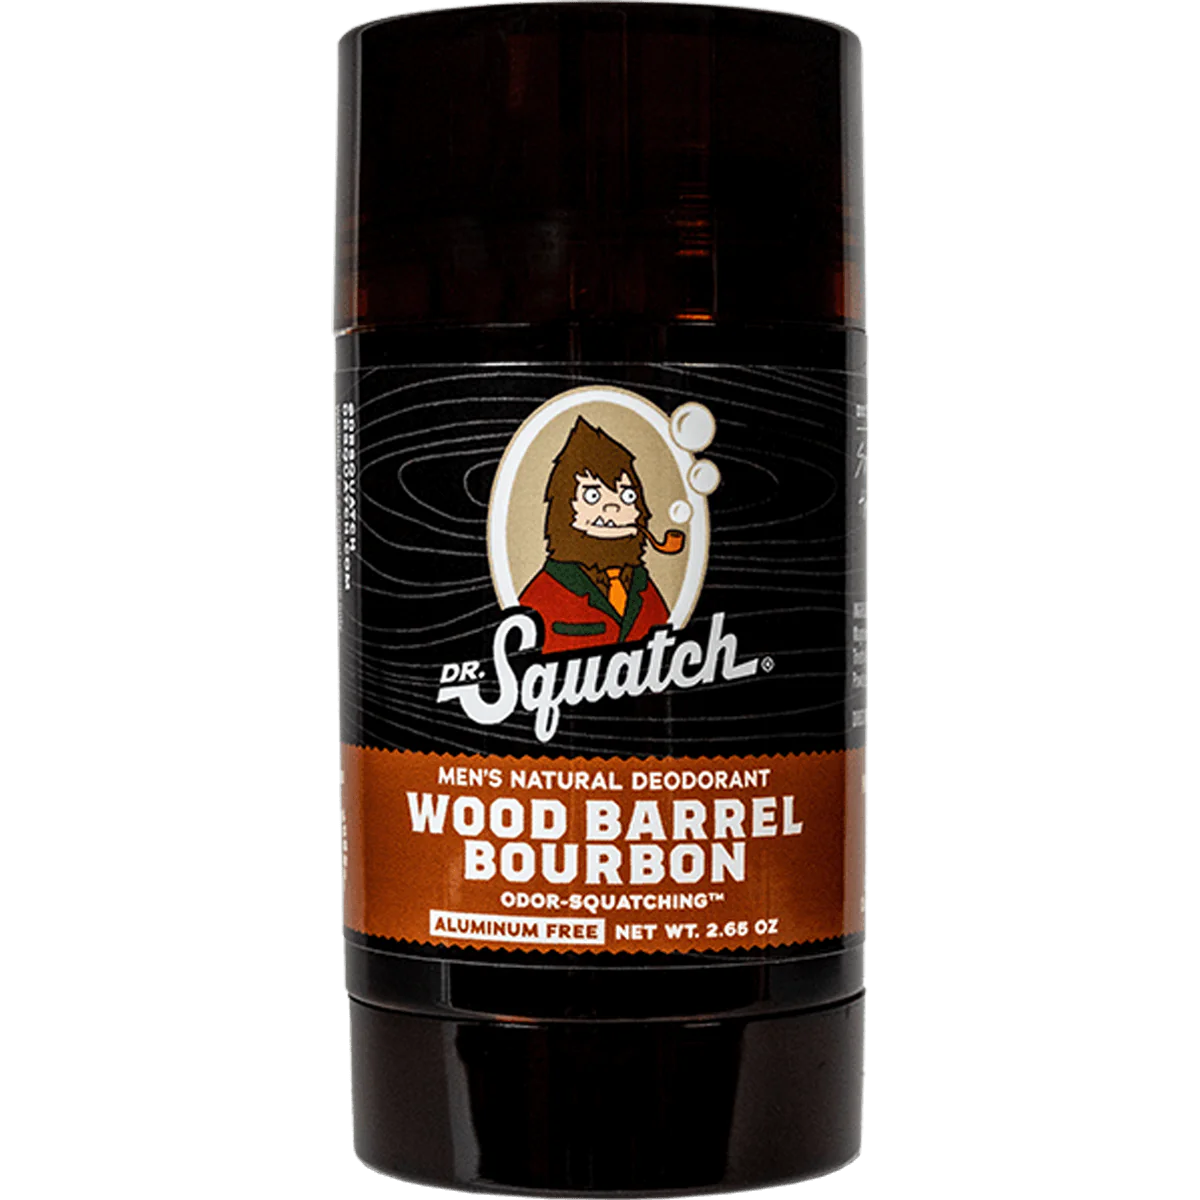 Men's Natural Deodorant - Wood Barrel Bourbon